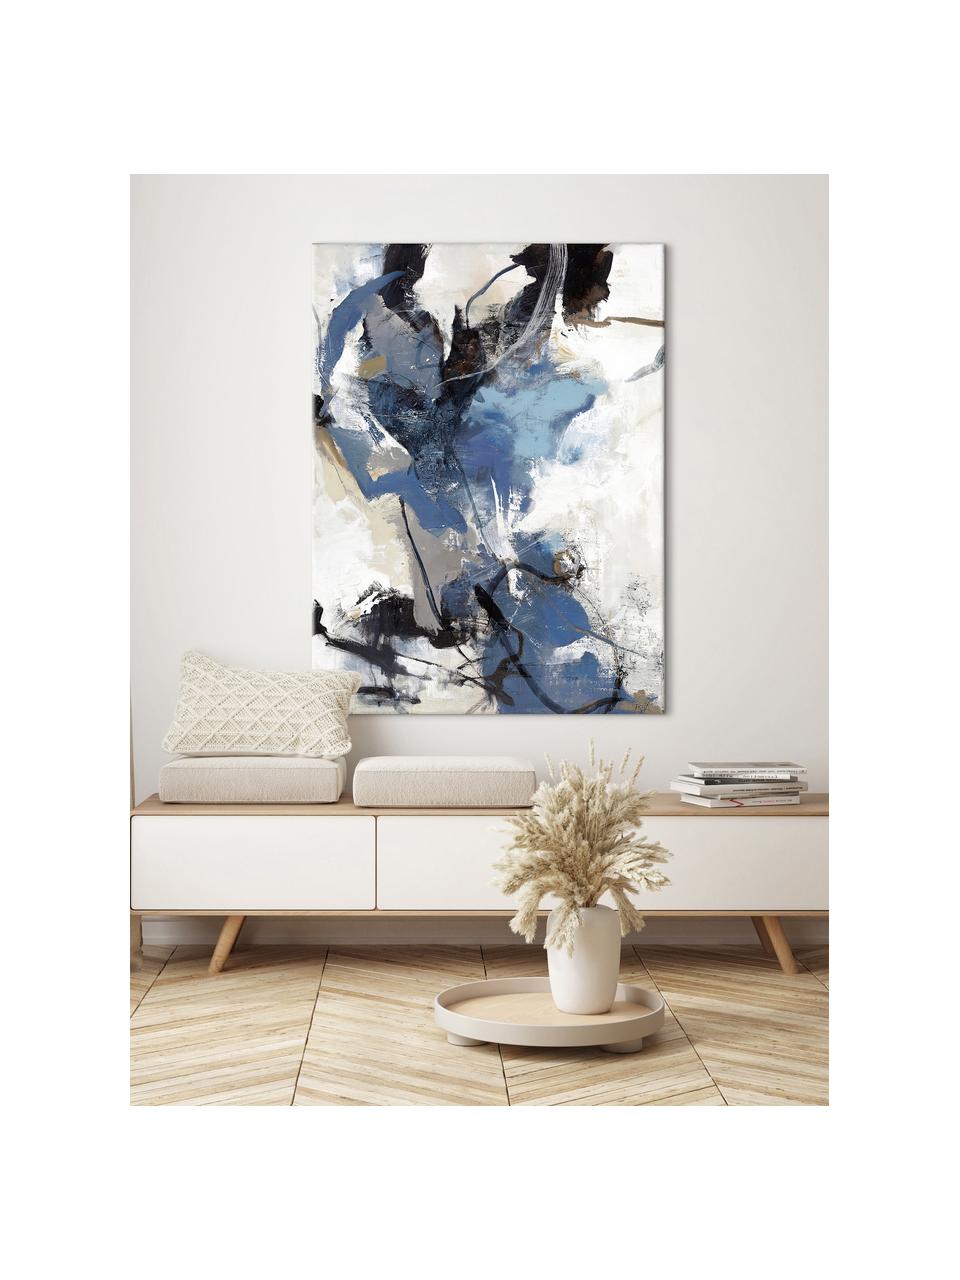 Handbemalter Leinwanddruck Blue vibes, Bild: Ölfarben auf Leinwand, Blau, Schwarz, Weisstöne, Grau, Braun, B 90 x H 118 cm